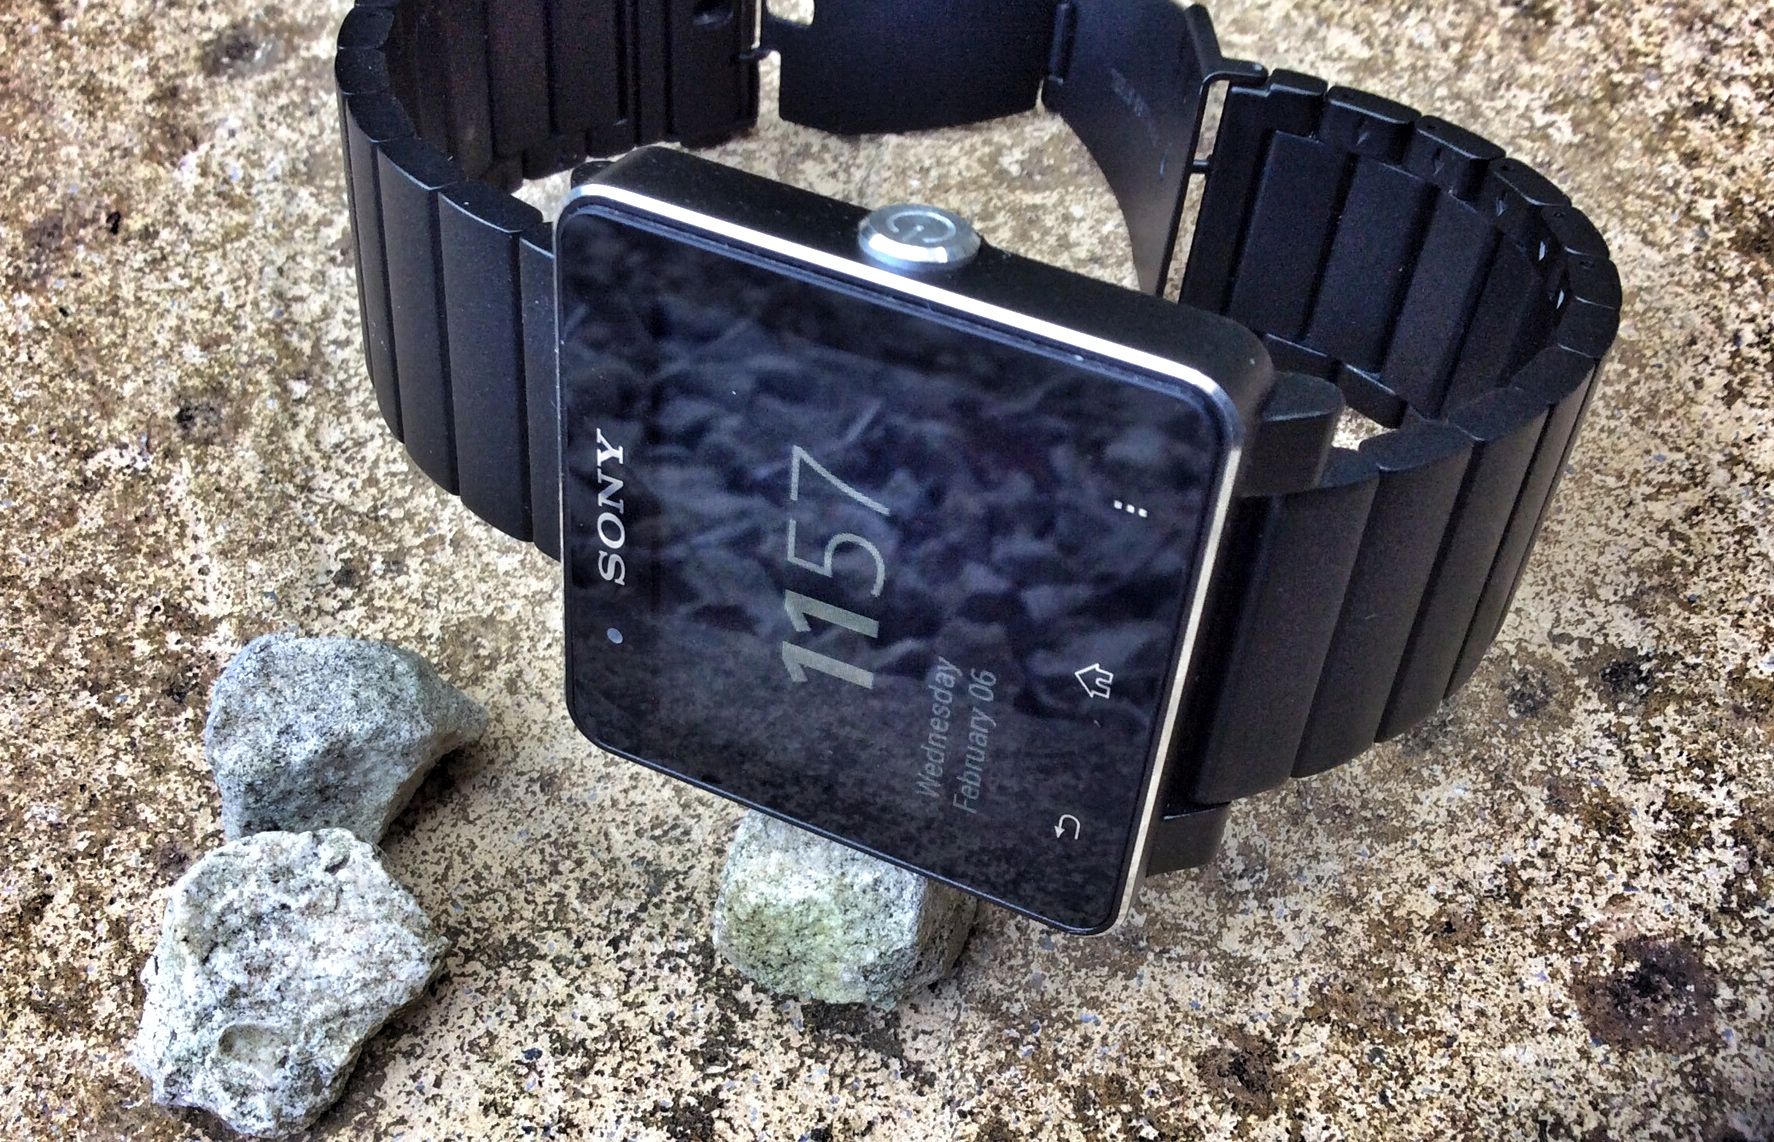 sony smartwatch 2 metal